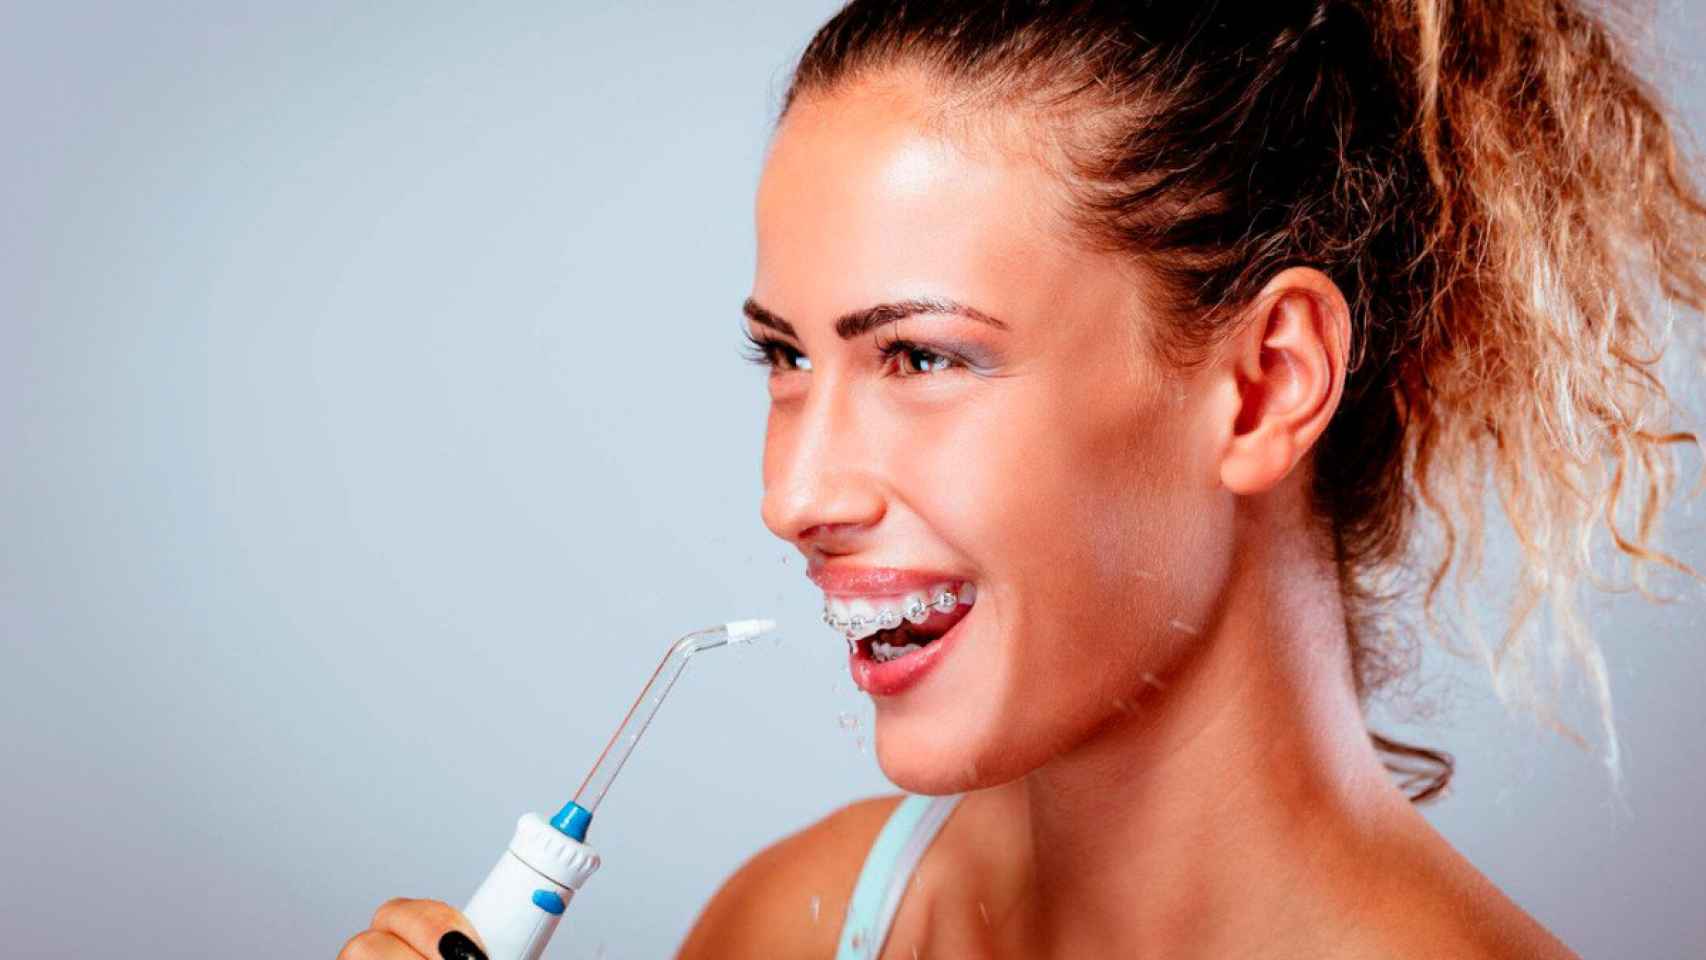 El irrigador dental portátil top ventas en  es de Panasonic ¡y cuesta  menos de